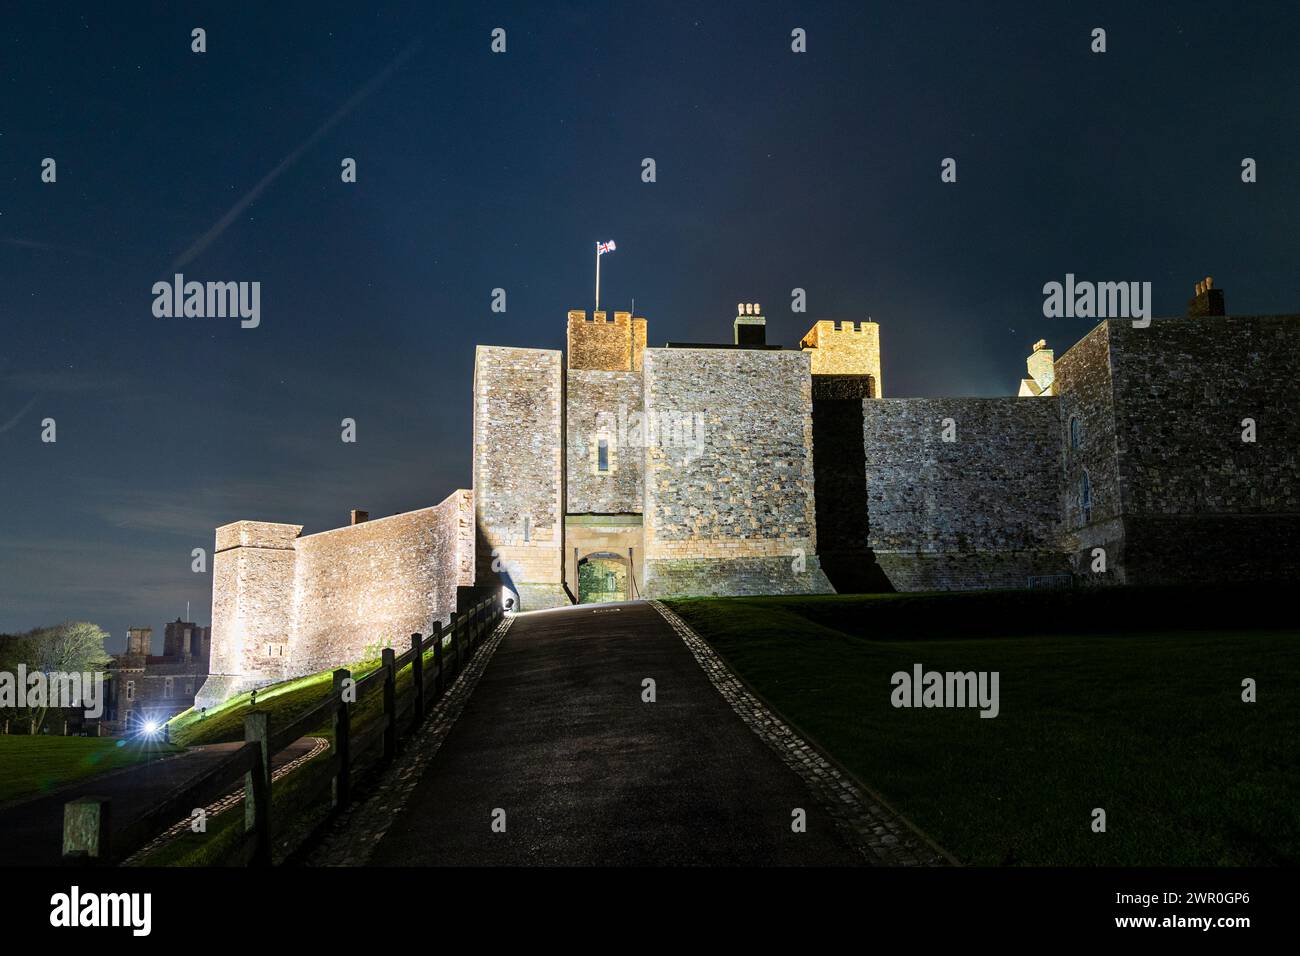 Château de Douvres la nuit, la porte principale dans le mur-rideau entourant le Grand donjon. Murs illuminés, avec le Keep Behind et l'Union Jack flottant Banque D'Images